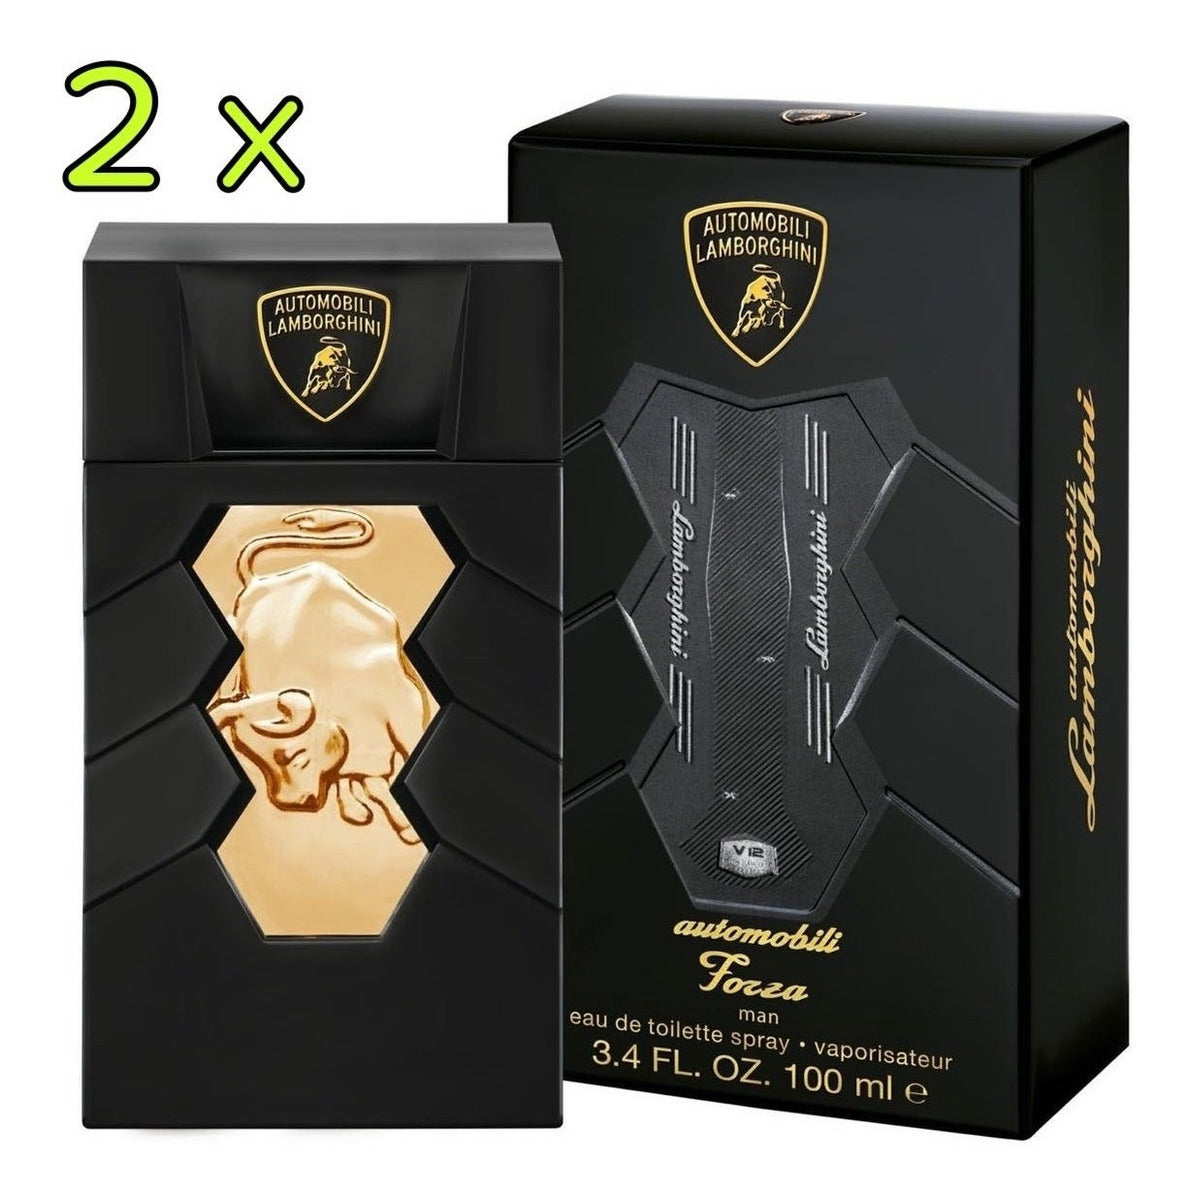 Automobili Forza (pack 2 pzs) para hombre / PACK - 2 x 100 ml Eau De Toilette Spray